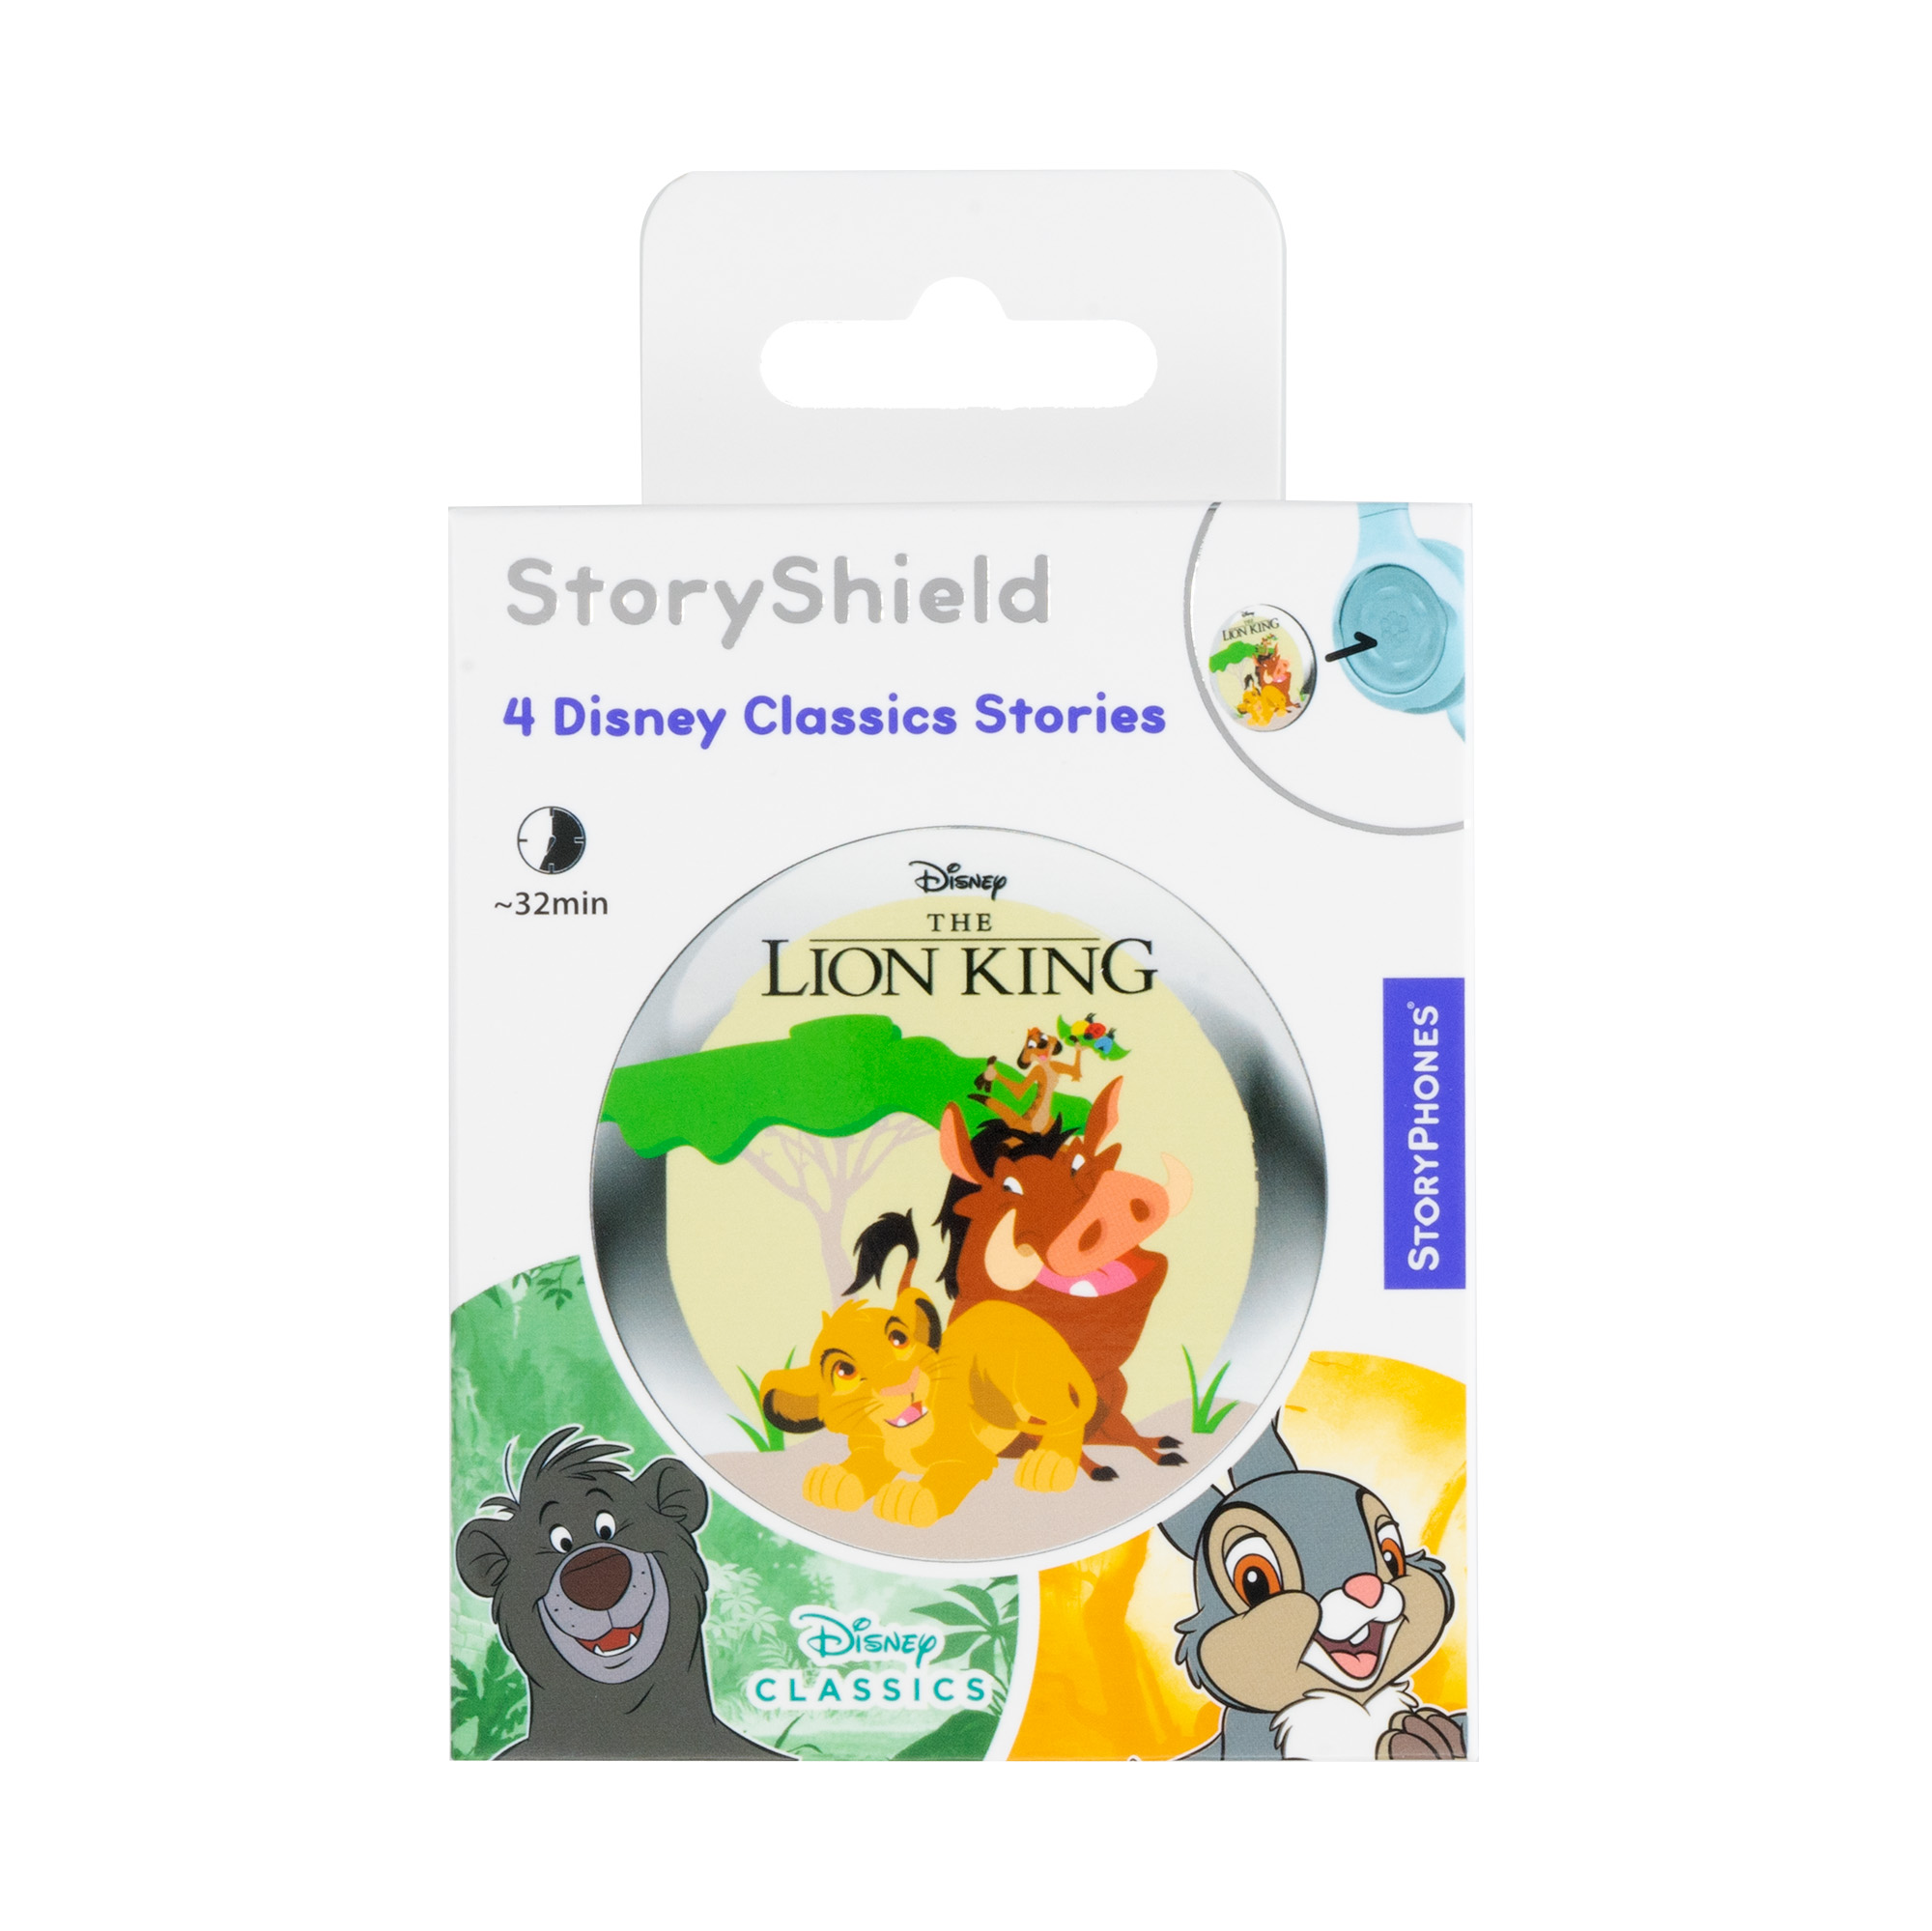  StoryShield StoryPhones Disney der \'König (Download - - Löwen\' Track) Audio - Audiogeschichte für